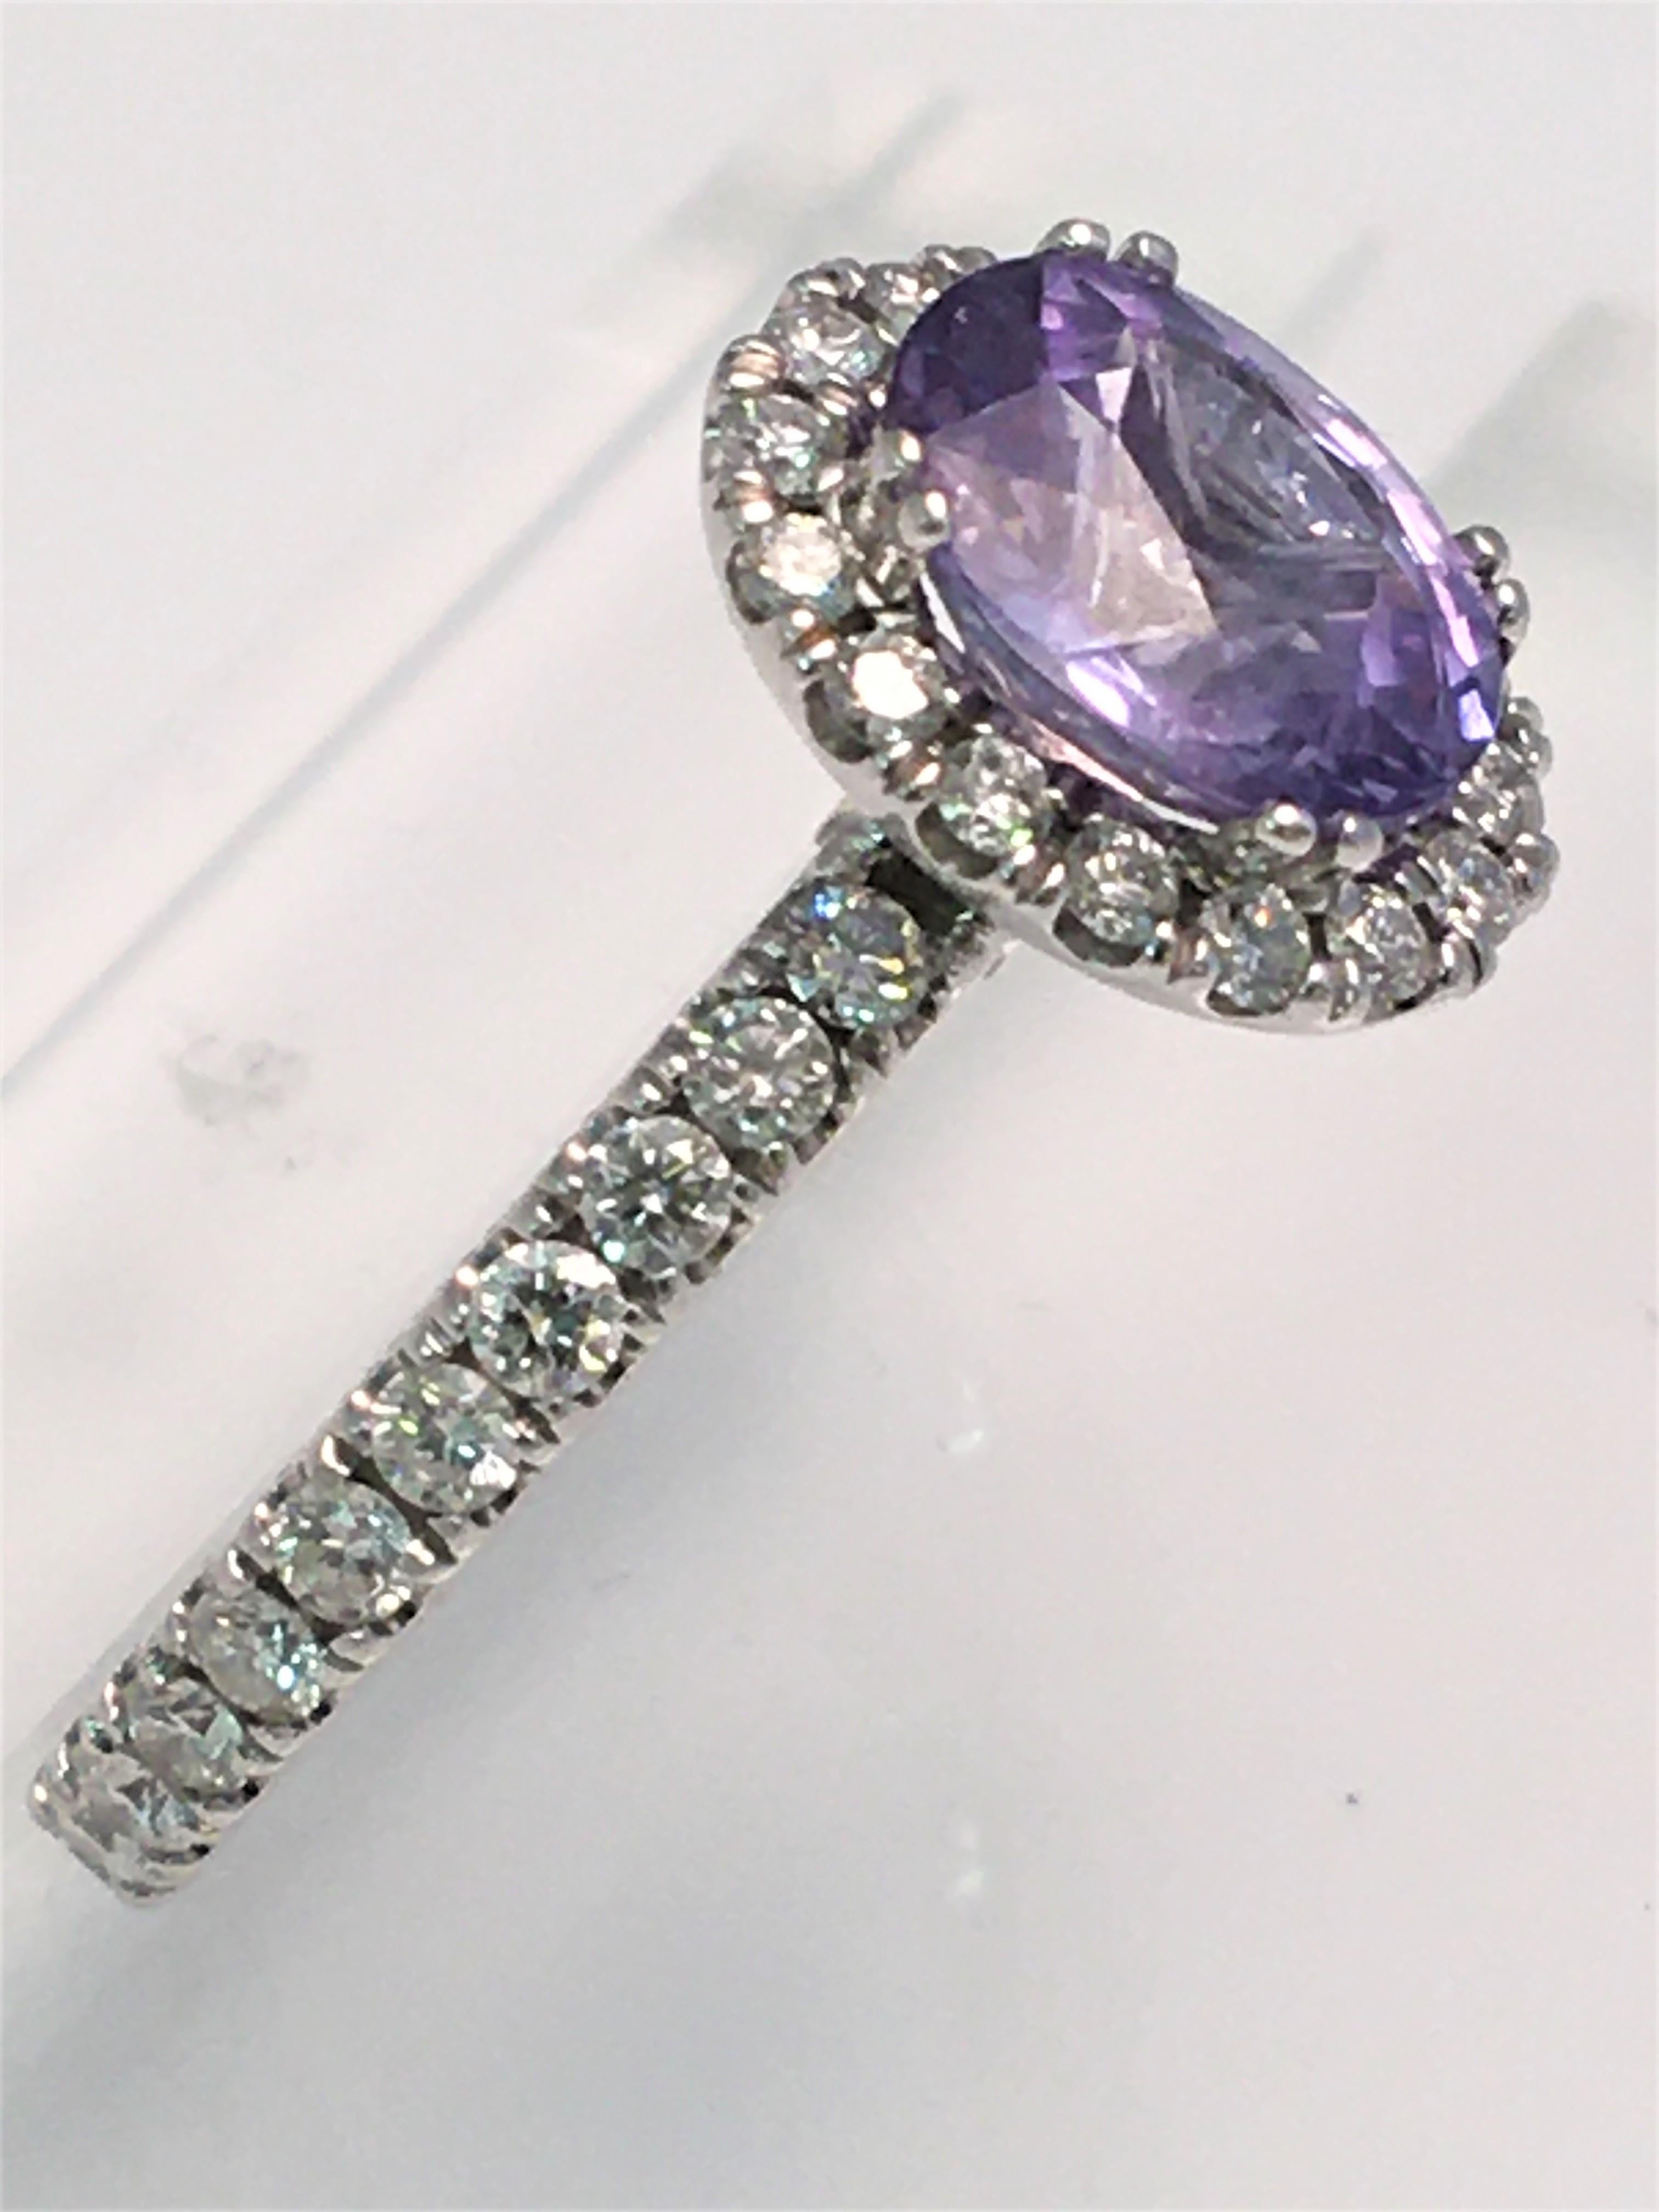 Par le designer Verragio, une magnifique bague en saphir violet et diamant qui illuminera sans aucun doute une pièce ! !!
Saphir violet ovale d'environ 8 x 7 mm entouré de diamants ronds.
Les diamants ronds font également environ 85 % du tour de